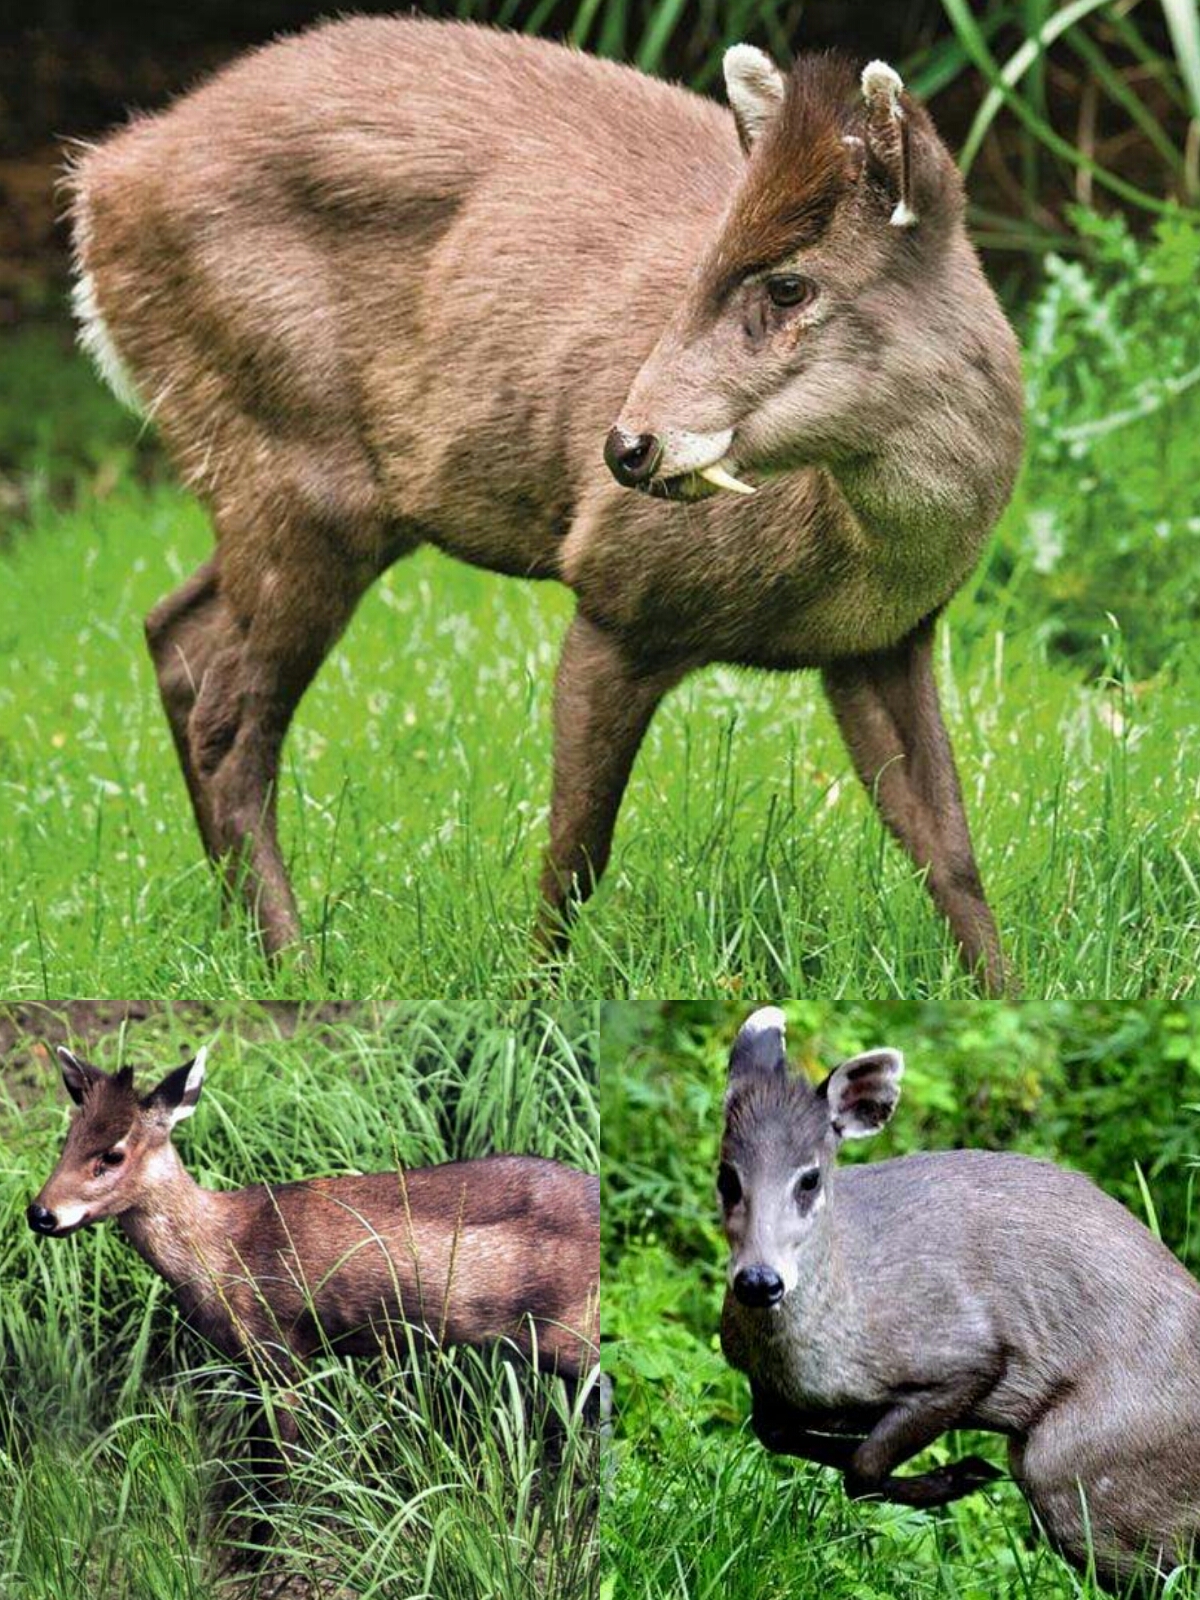 毛冠鹿别称:青鹿,黑鹿,动物界,脊索动物门,脊椎动物亚门,哺乳纲,真兽